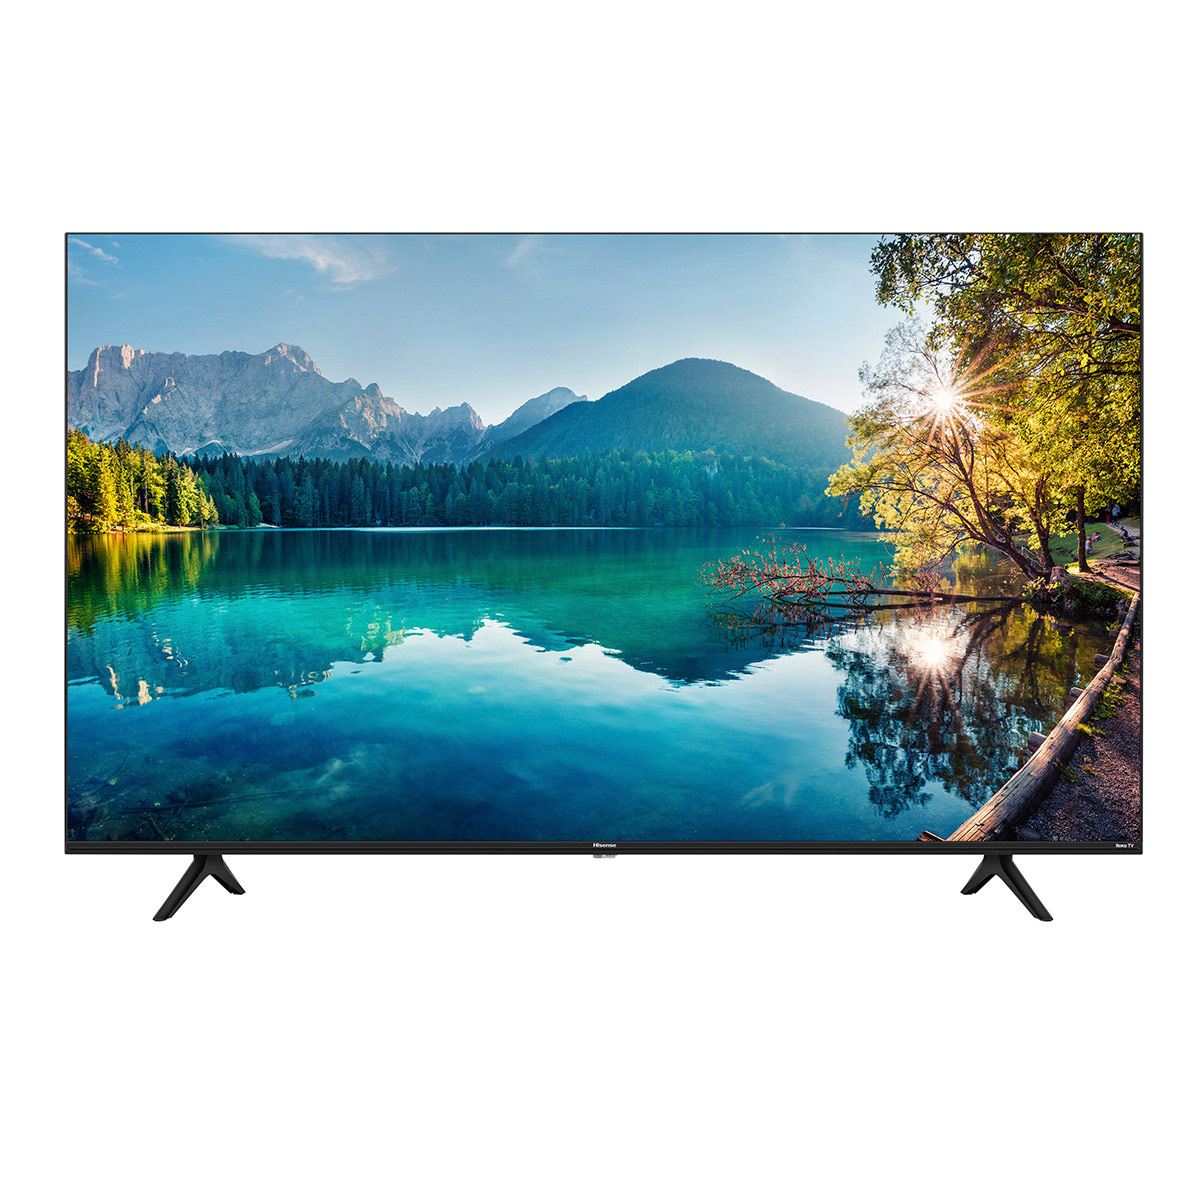 tira el precio de esta smart TV 4K QLED de Hisense con 55